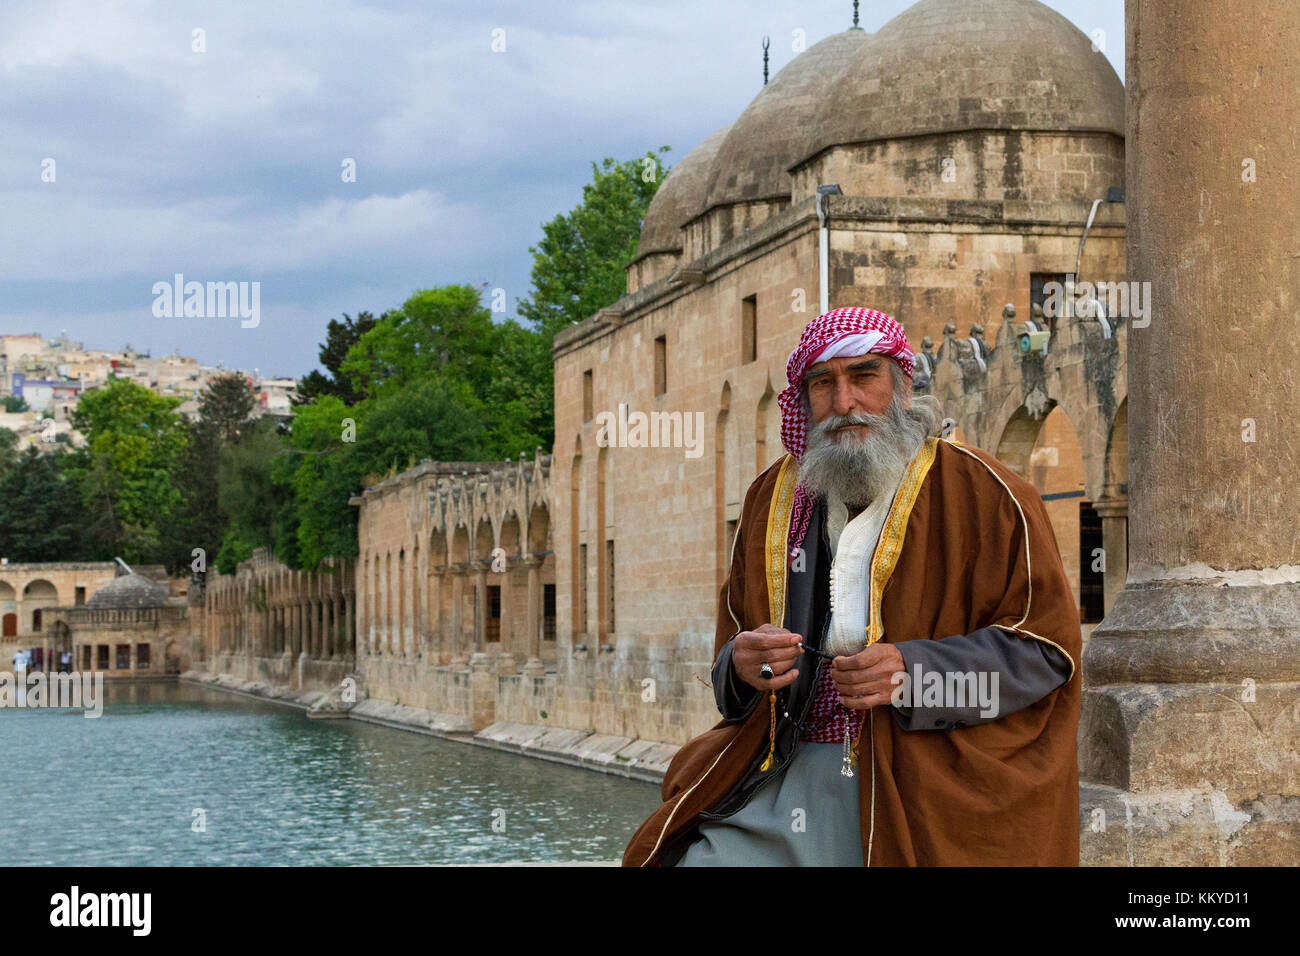 Lokaler Mann in ethnischen Kostümen, im Park bekannt als 'Abrahams Teich' oder 'Balikligol' in Sanliurfa, Türkei. Stockfoto